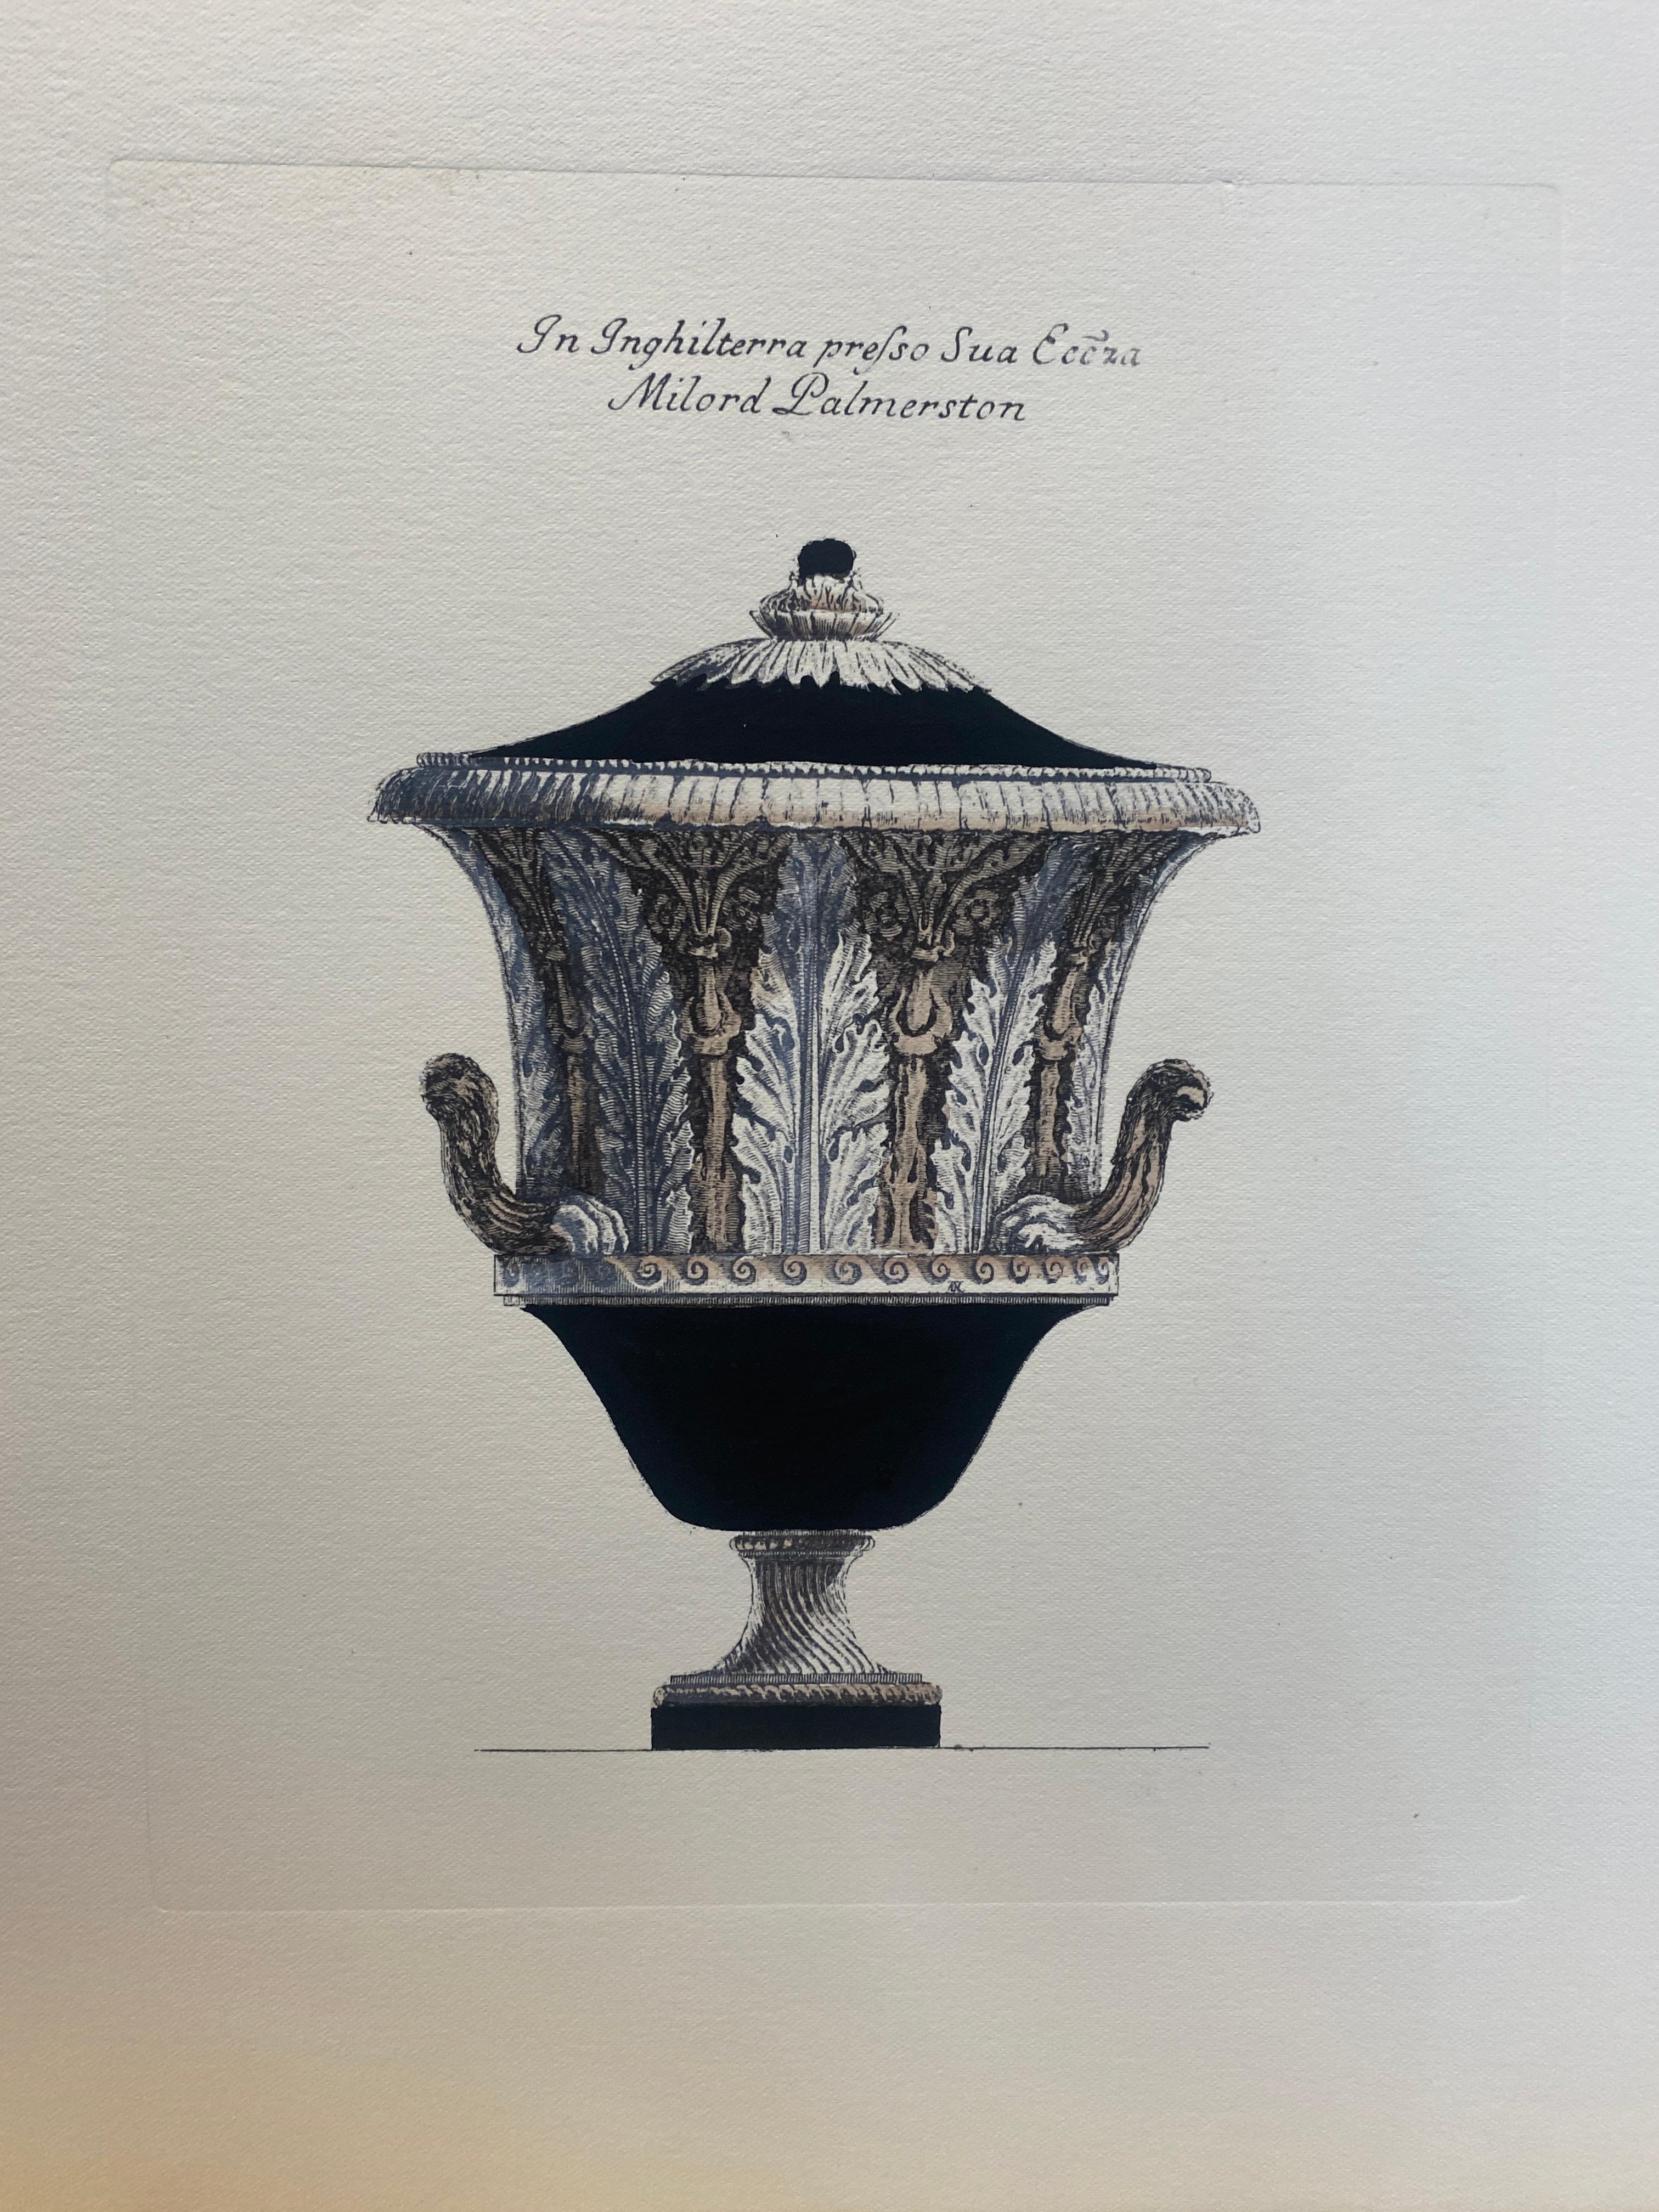 Sehr originelle Reproduktionen von dekorativen Vasen aus bedeutenden englischen Herrenhäusern, gedruckt auf einer Handpresse auf Gravurpapier aus 100% Baumwolle.
Vollständig handbemalt mit cremefarbener Farbe, umberfarbenen Highlights und